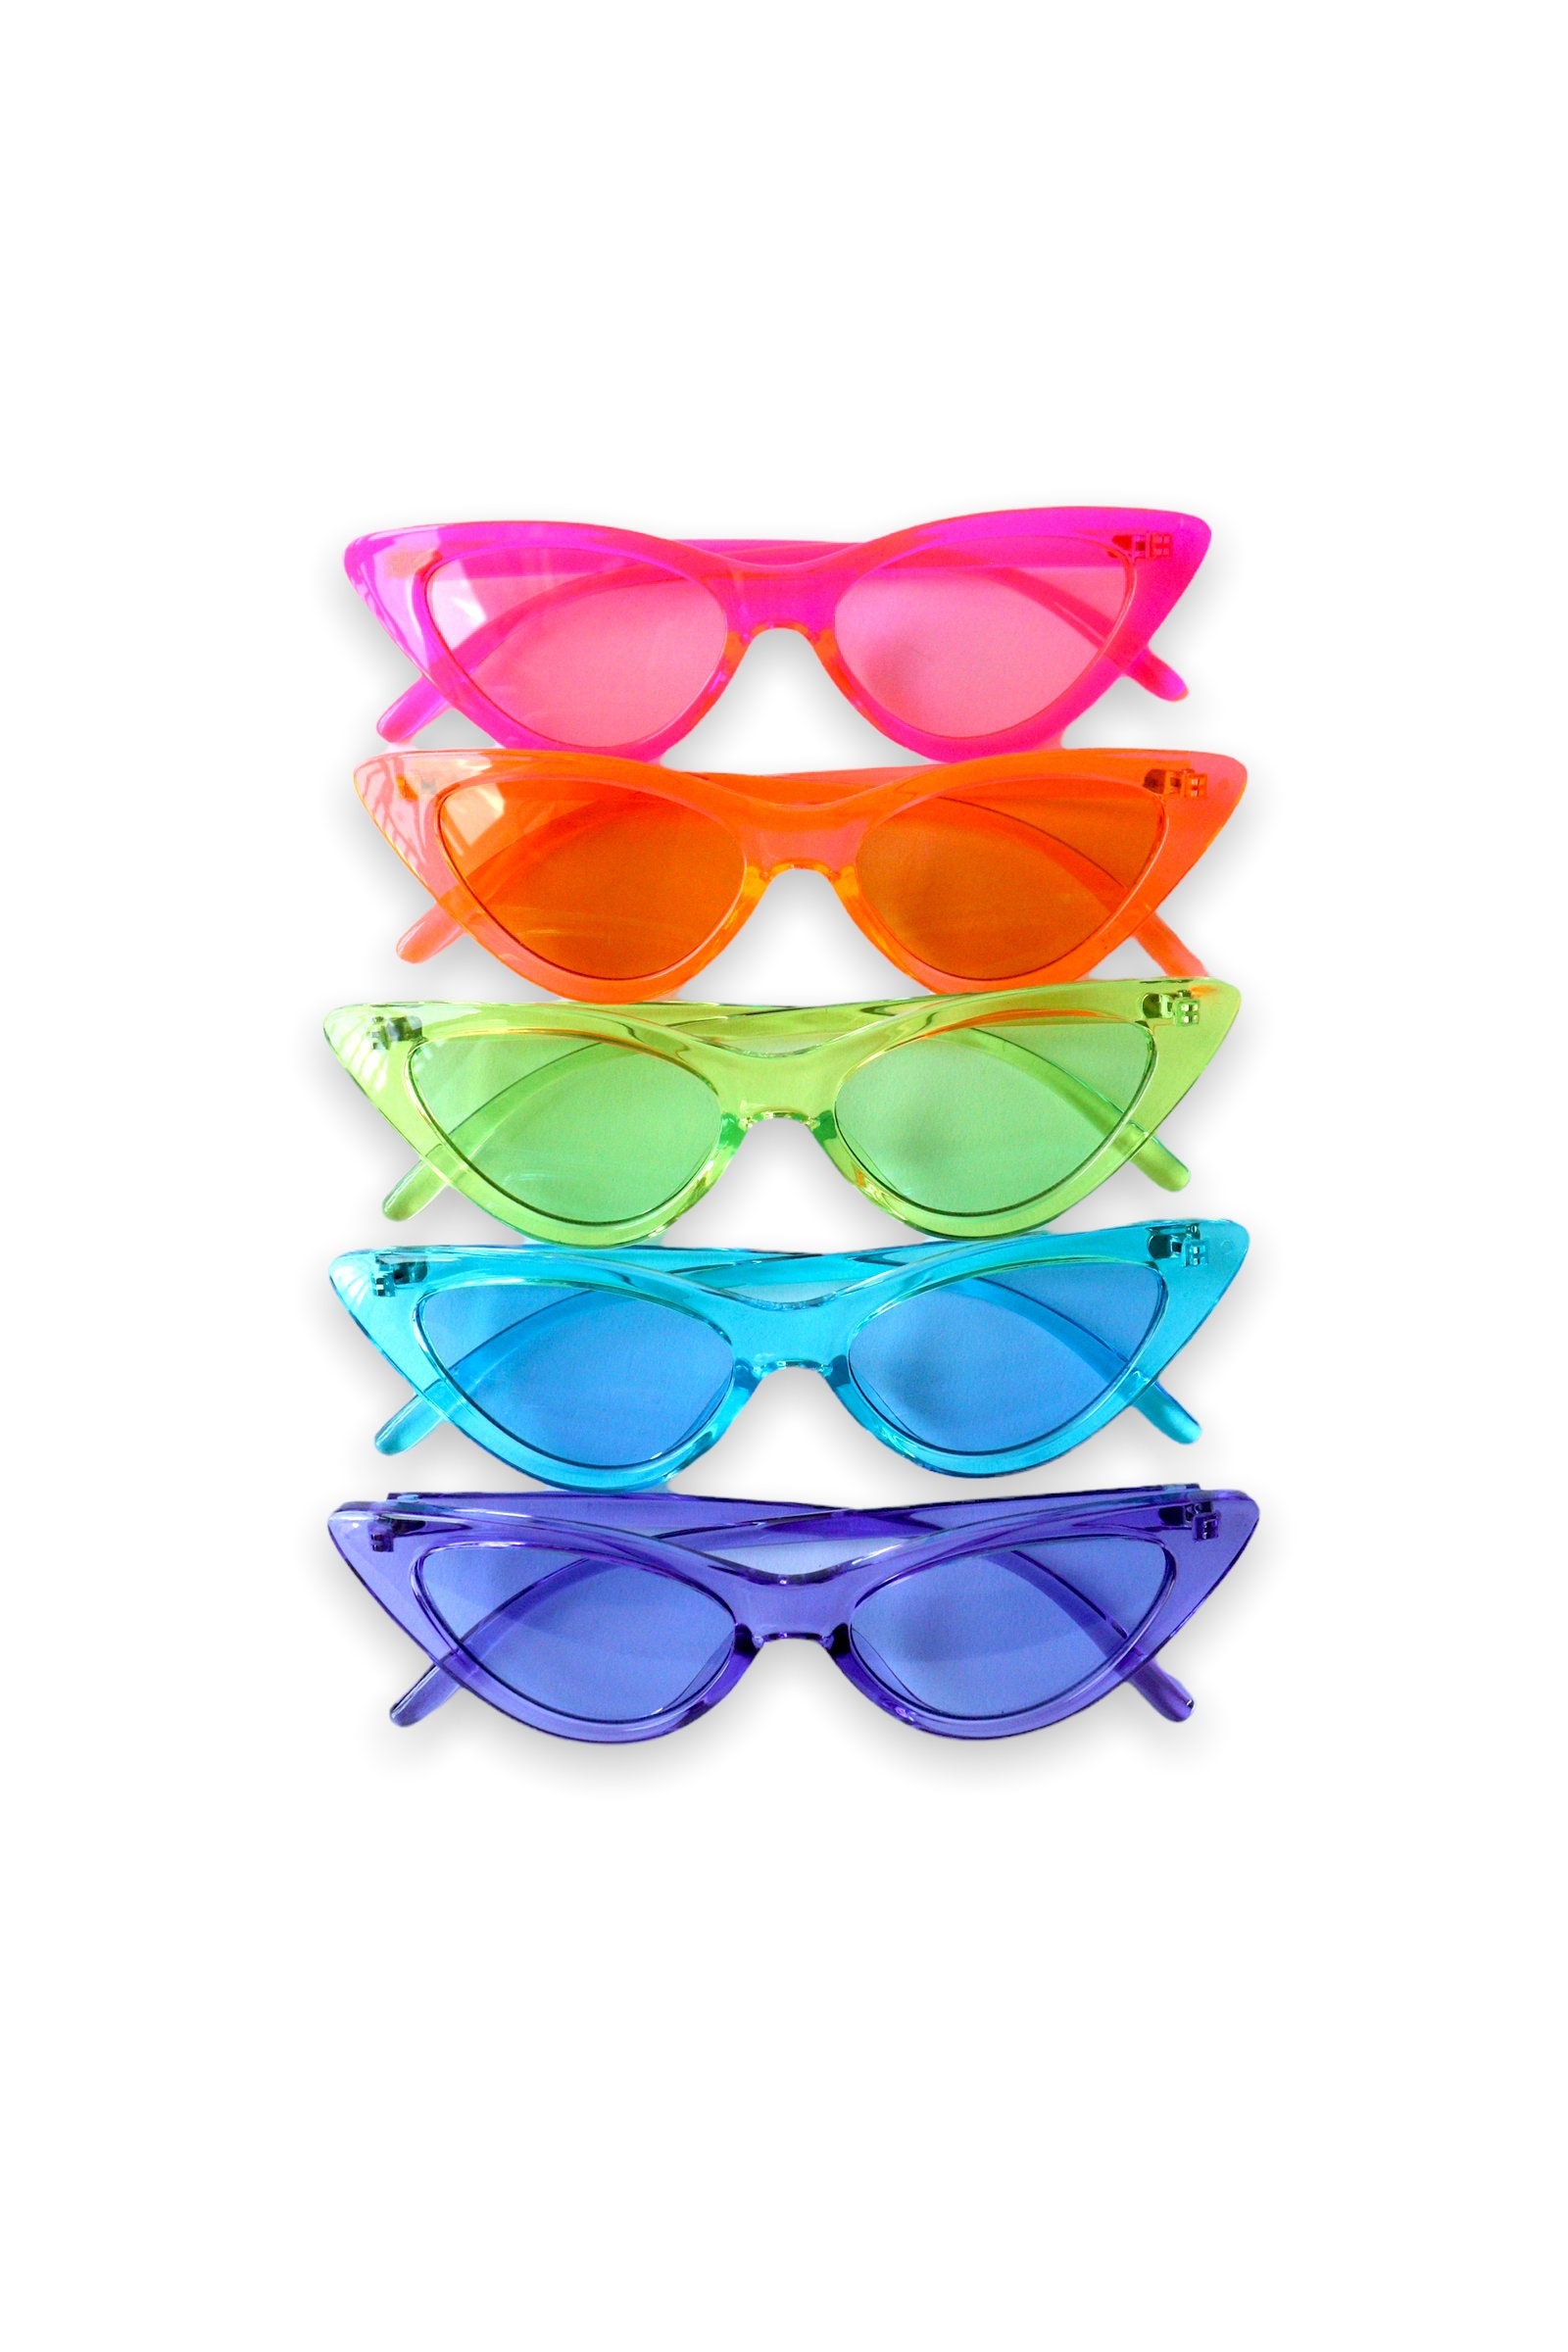 Accessories  Iridescent Rainbow Square Sunglasses Club Festival